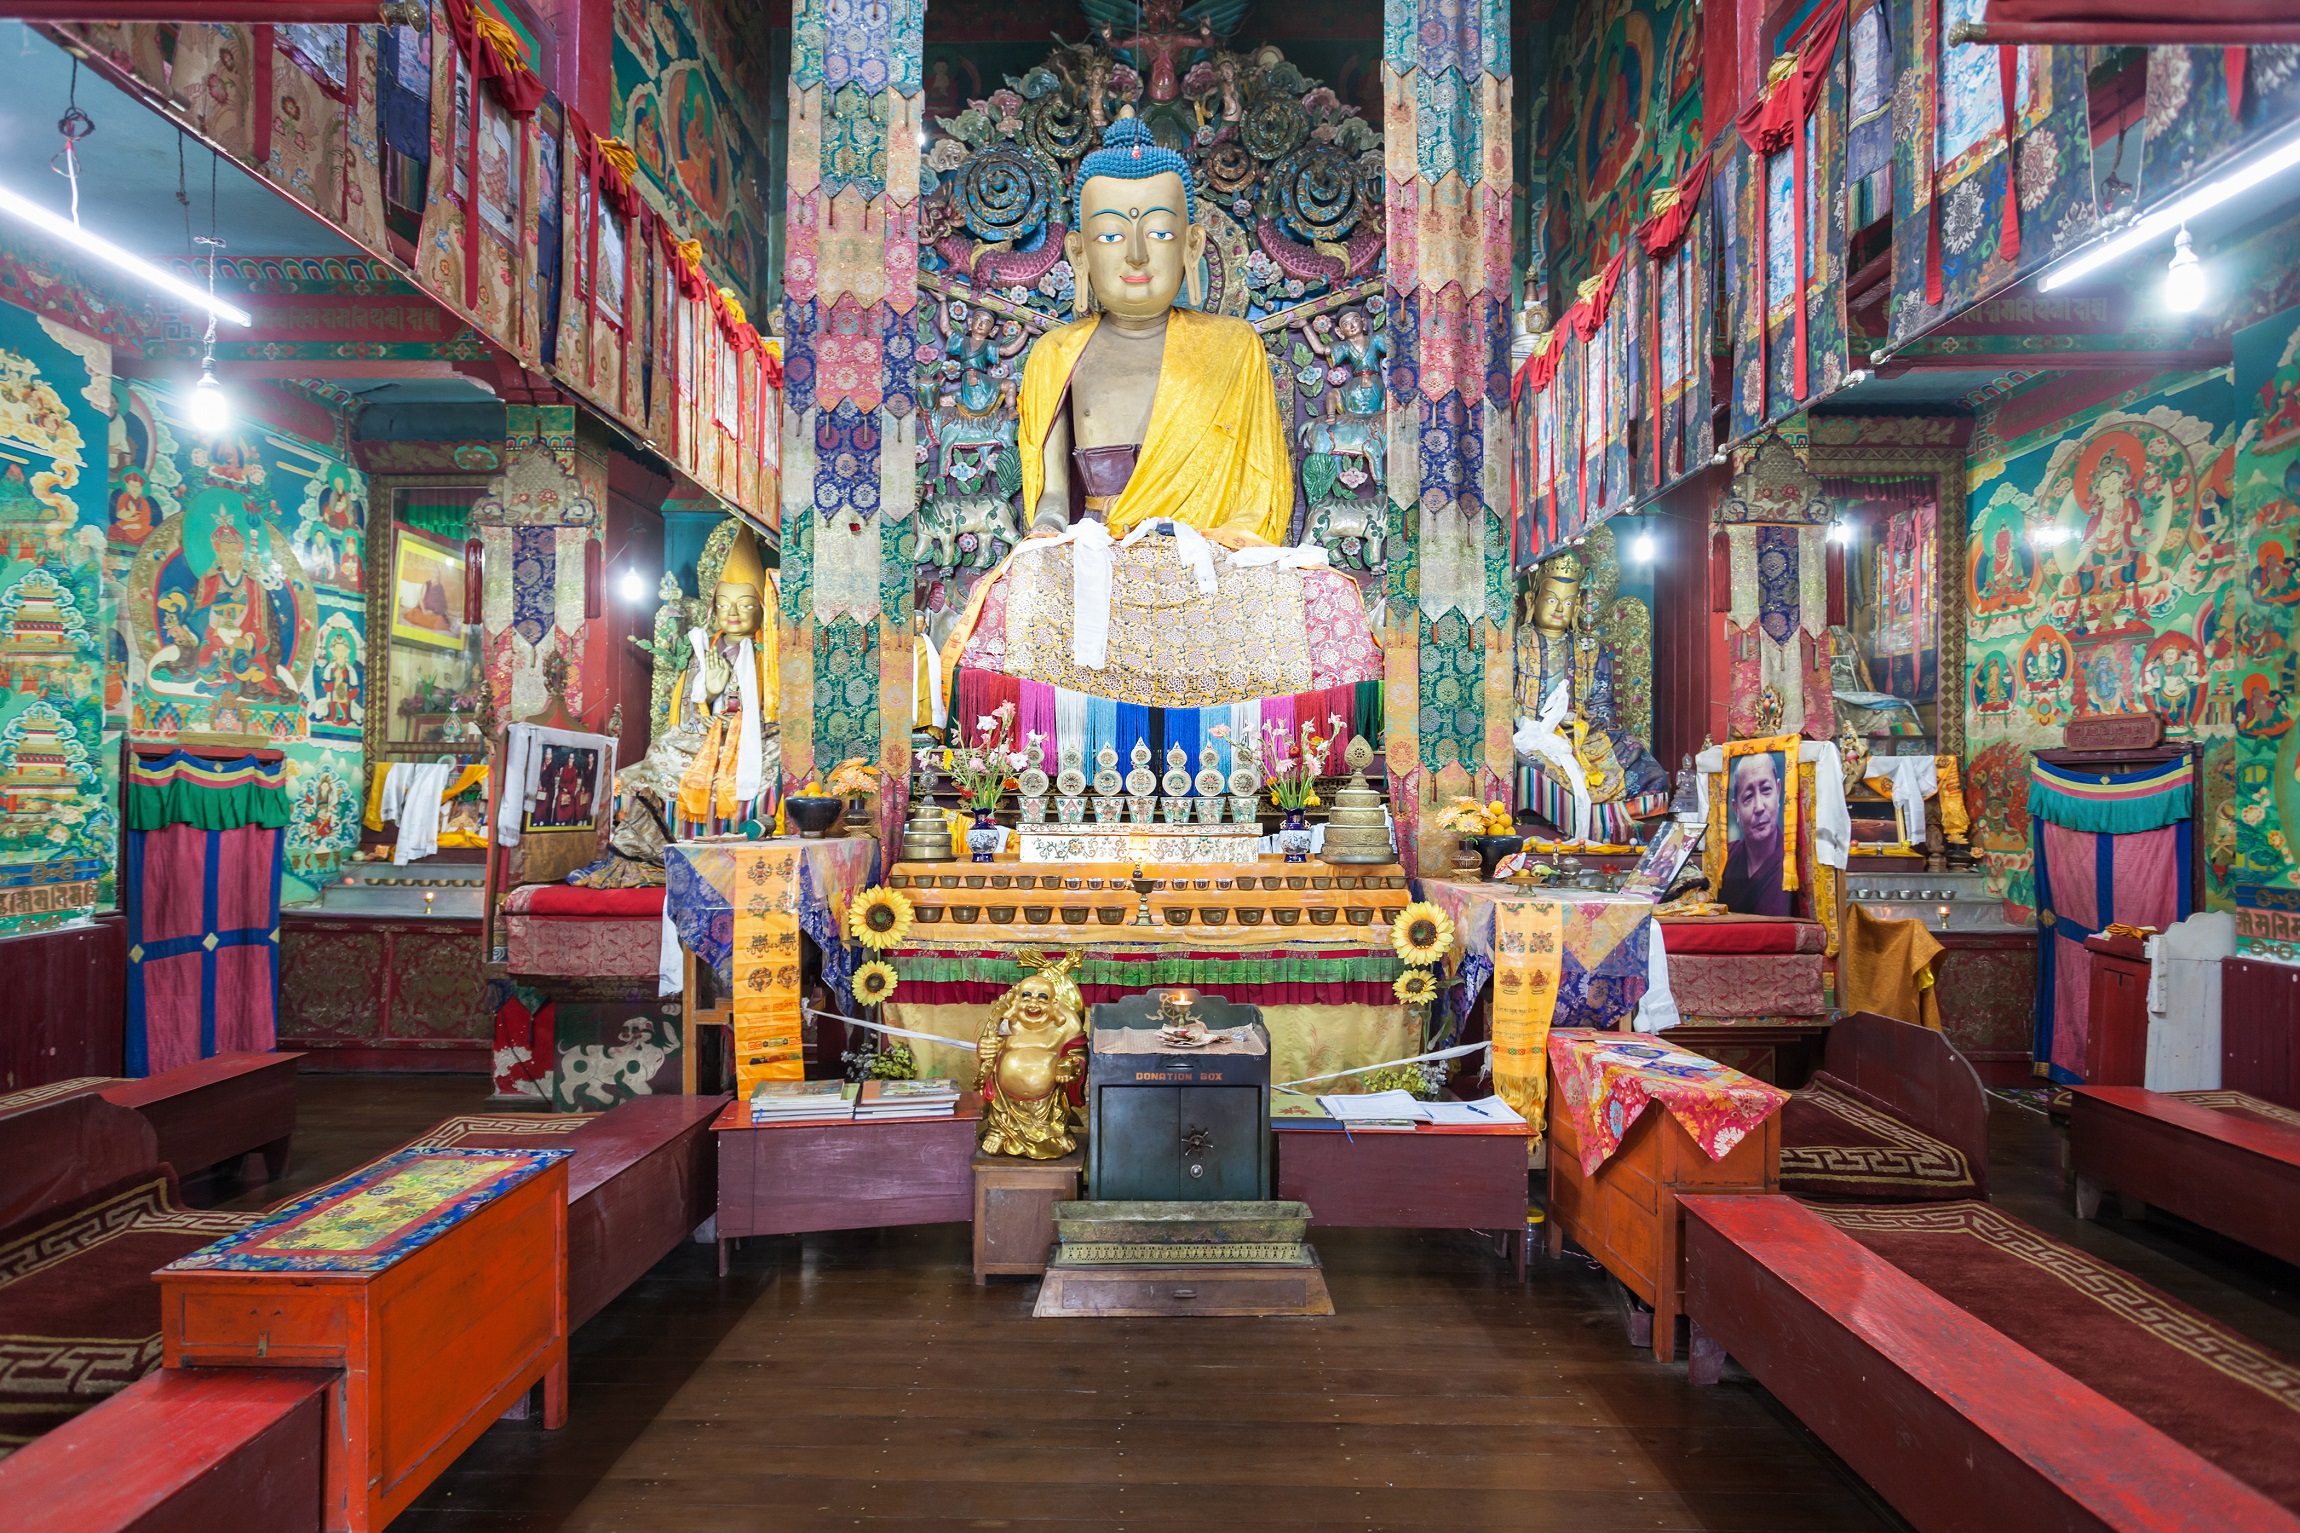 DARJEELING, INDIA - NOVEMBER 17, 2015 Ghoom Monastery interior. It is located in Darjeeling in the state of West Bengal, India